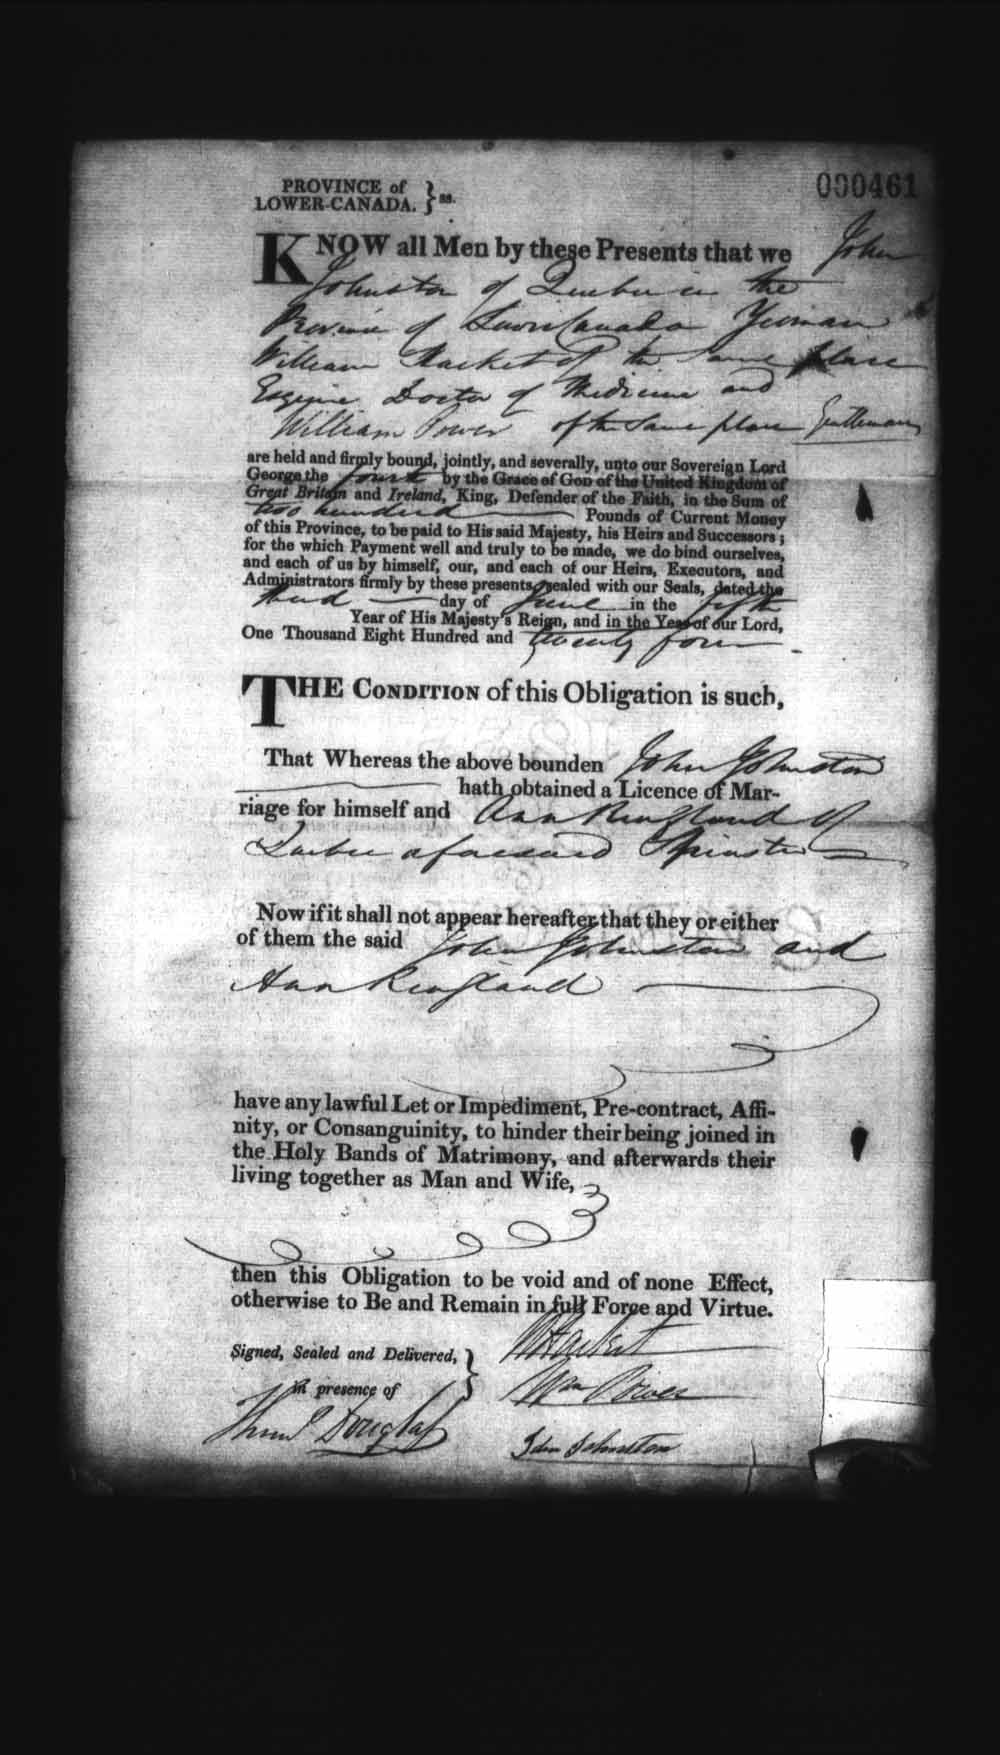 Page numérisé de Cautionnements de mariages pour le Haut-Canada et le Bas-Canada (1779-1865) pour l'image numéro: e008236369